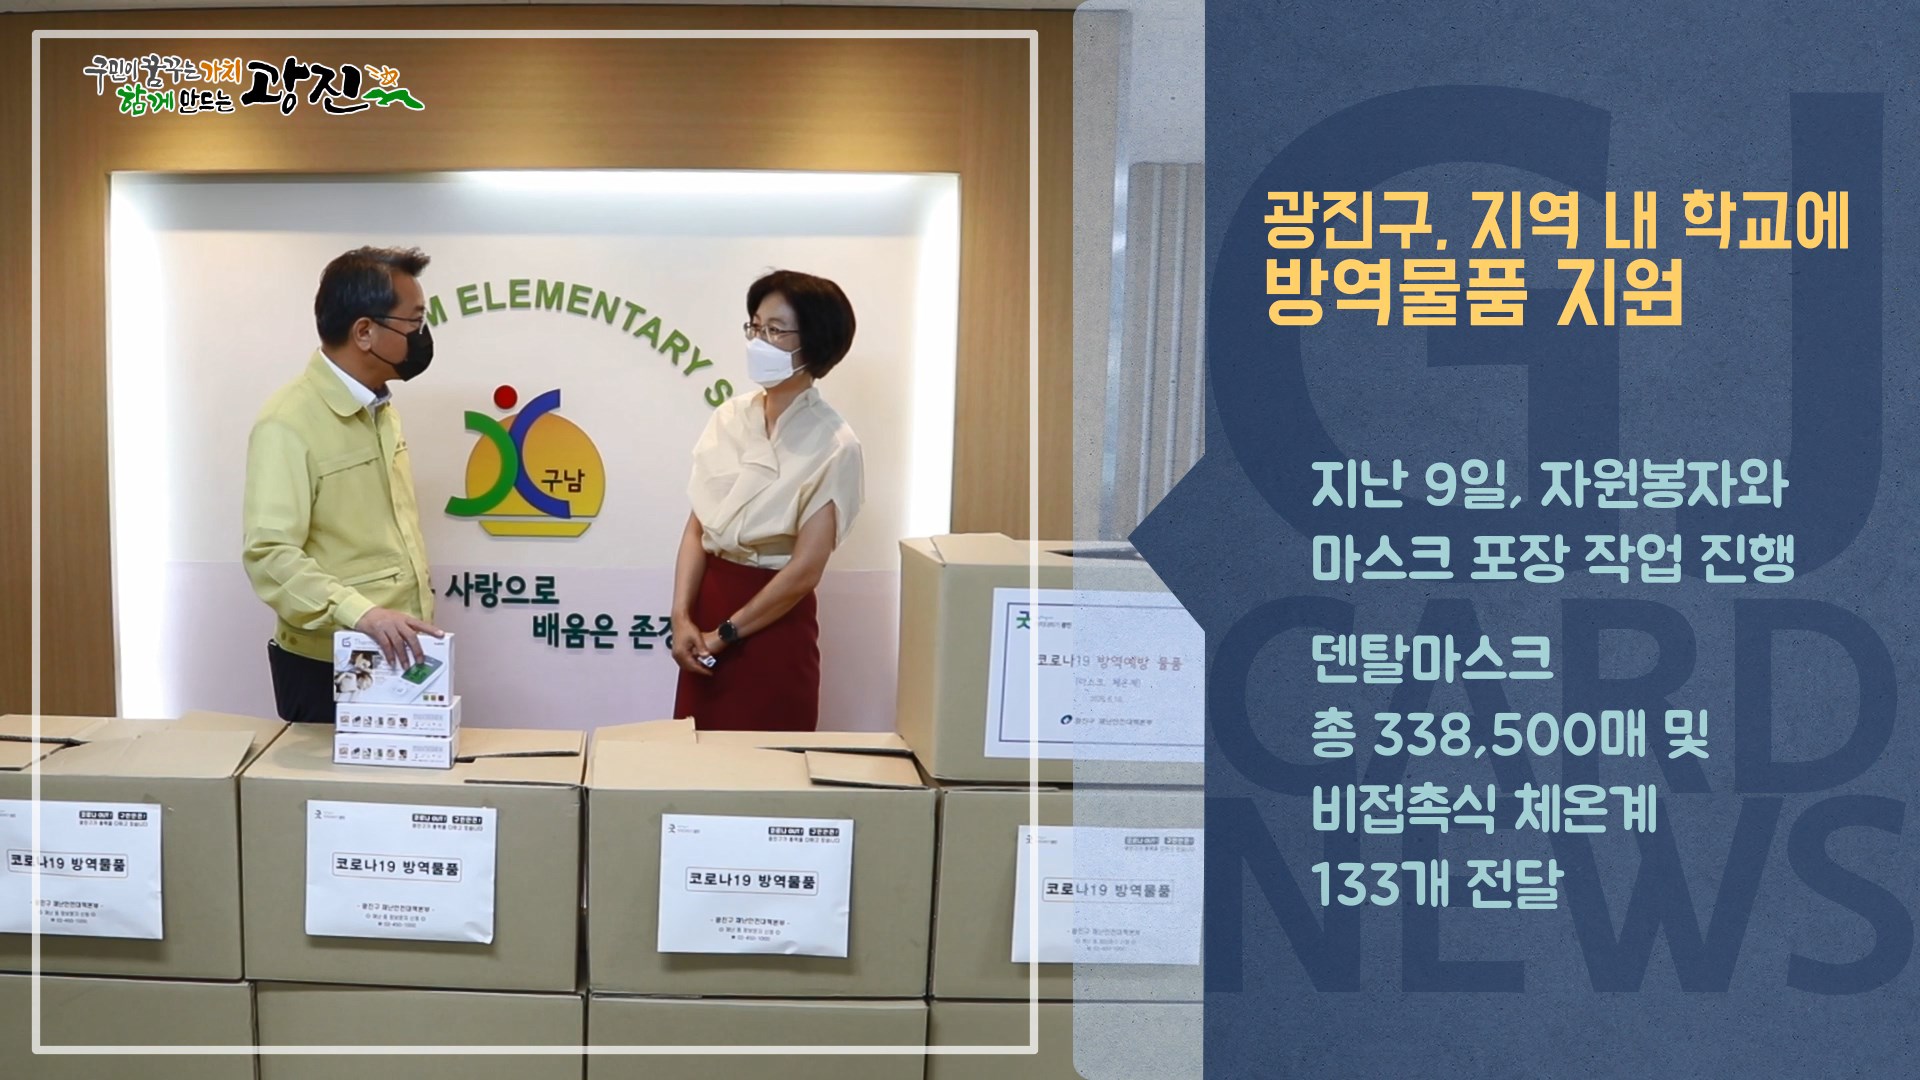 [광진카드뉴스 - 6월 둘째 주] 광진구 지역 내 학교에 방역물품 지원